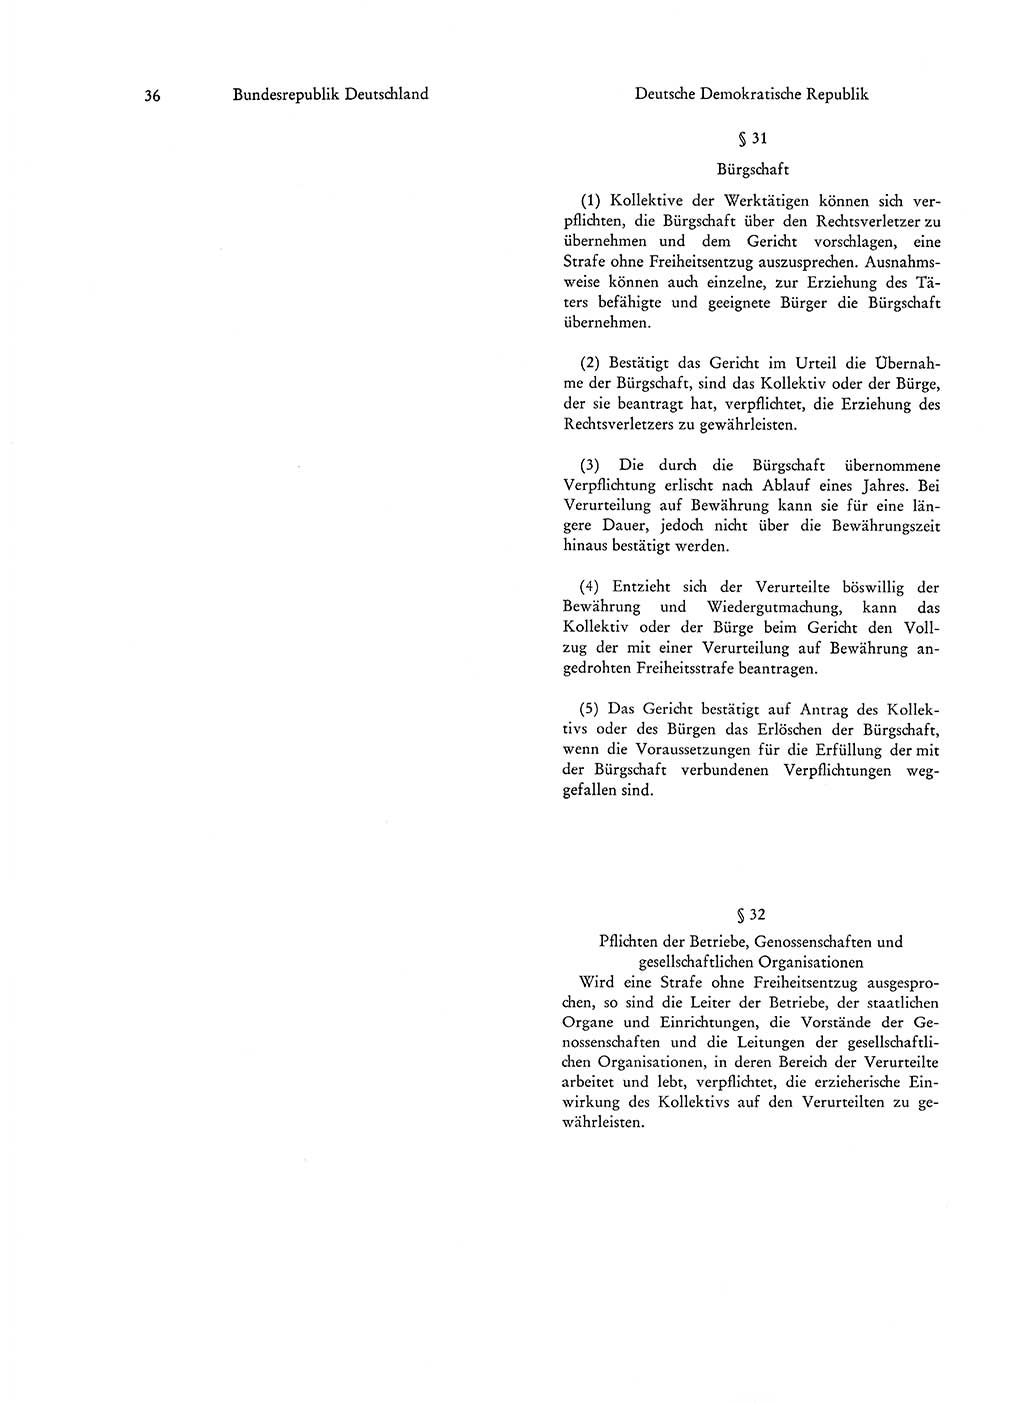 Strafgesetzgebung in Deutschland [Bundesrepublik Deutschland (BRD) und Deutsche Demokratische Republik (DDR)] 1972, Seite 36 (Str.-Ges. Dtl. StGB BRD DDR 1972, S. 36)